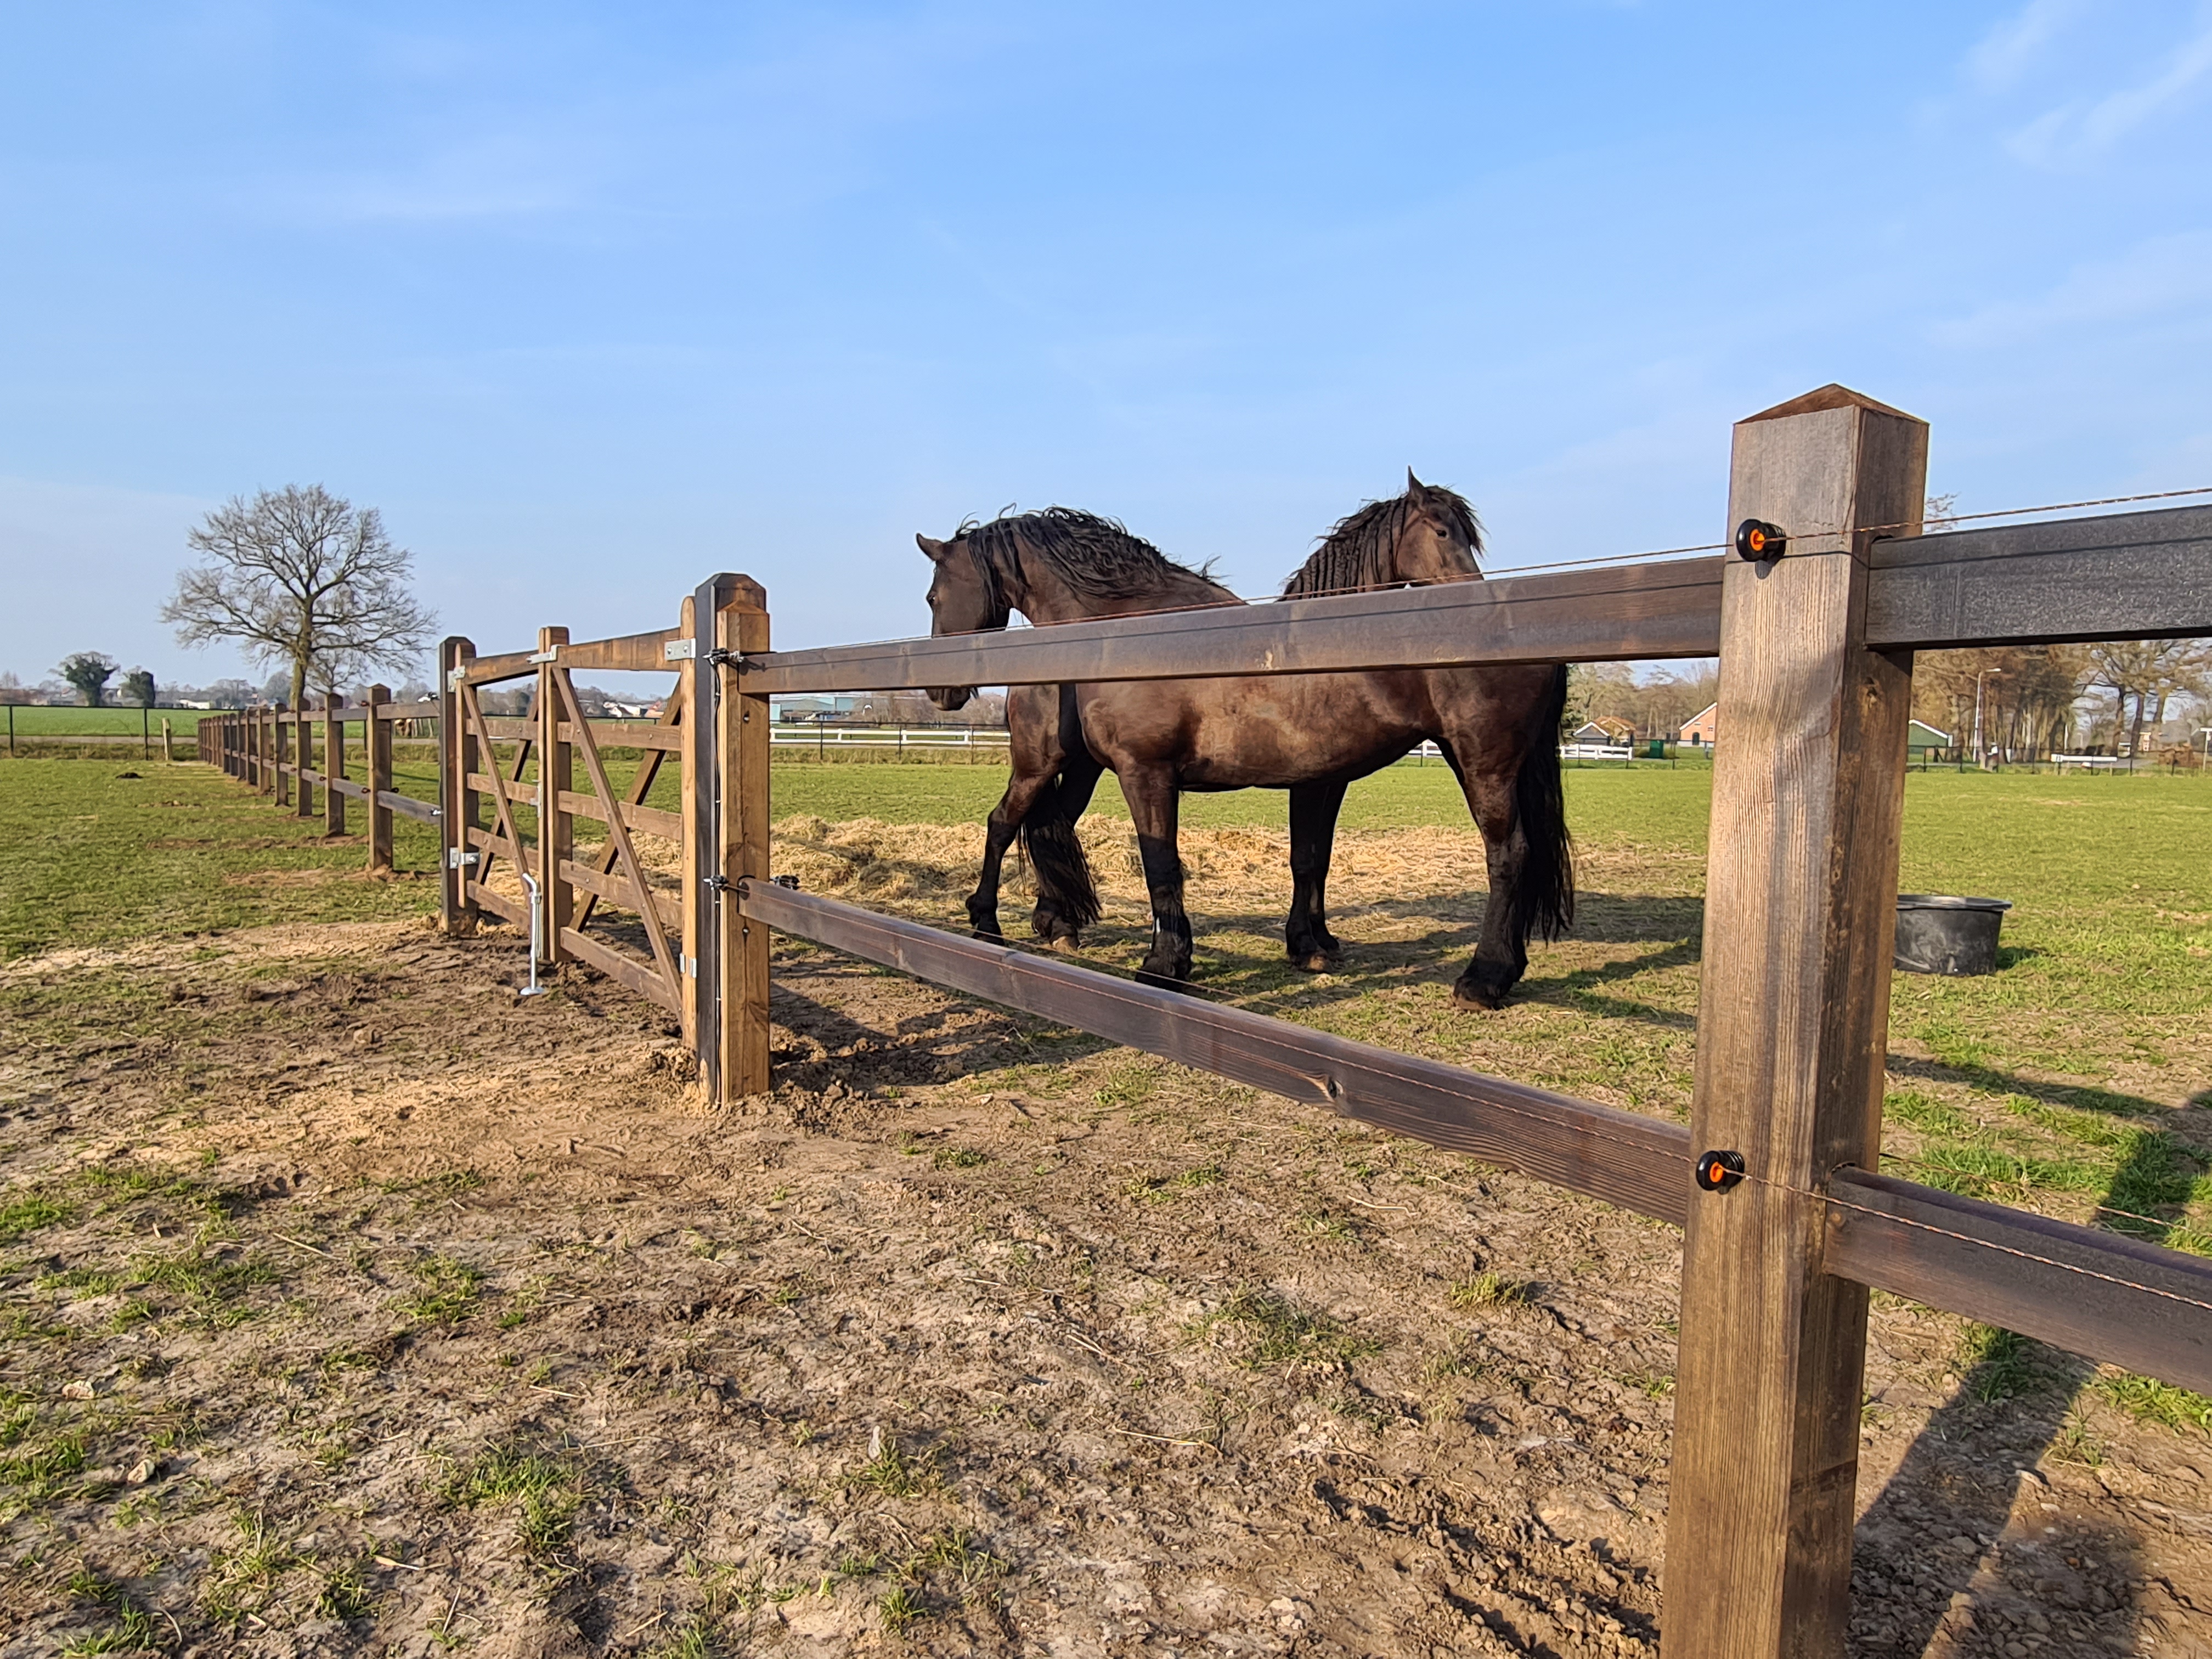 Ein Holzzaun trennt zwei Koppeln, aber ein Holztor ermöglicht den Zugang zwischen den beiden Koppeln. Zwei große Pferde stehen neben dem Holztor.